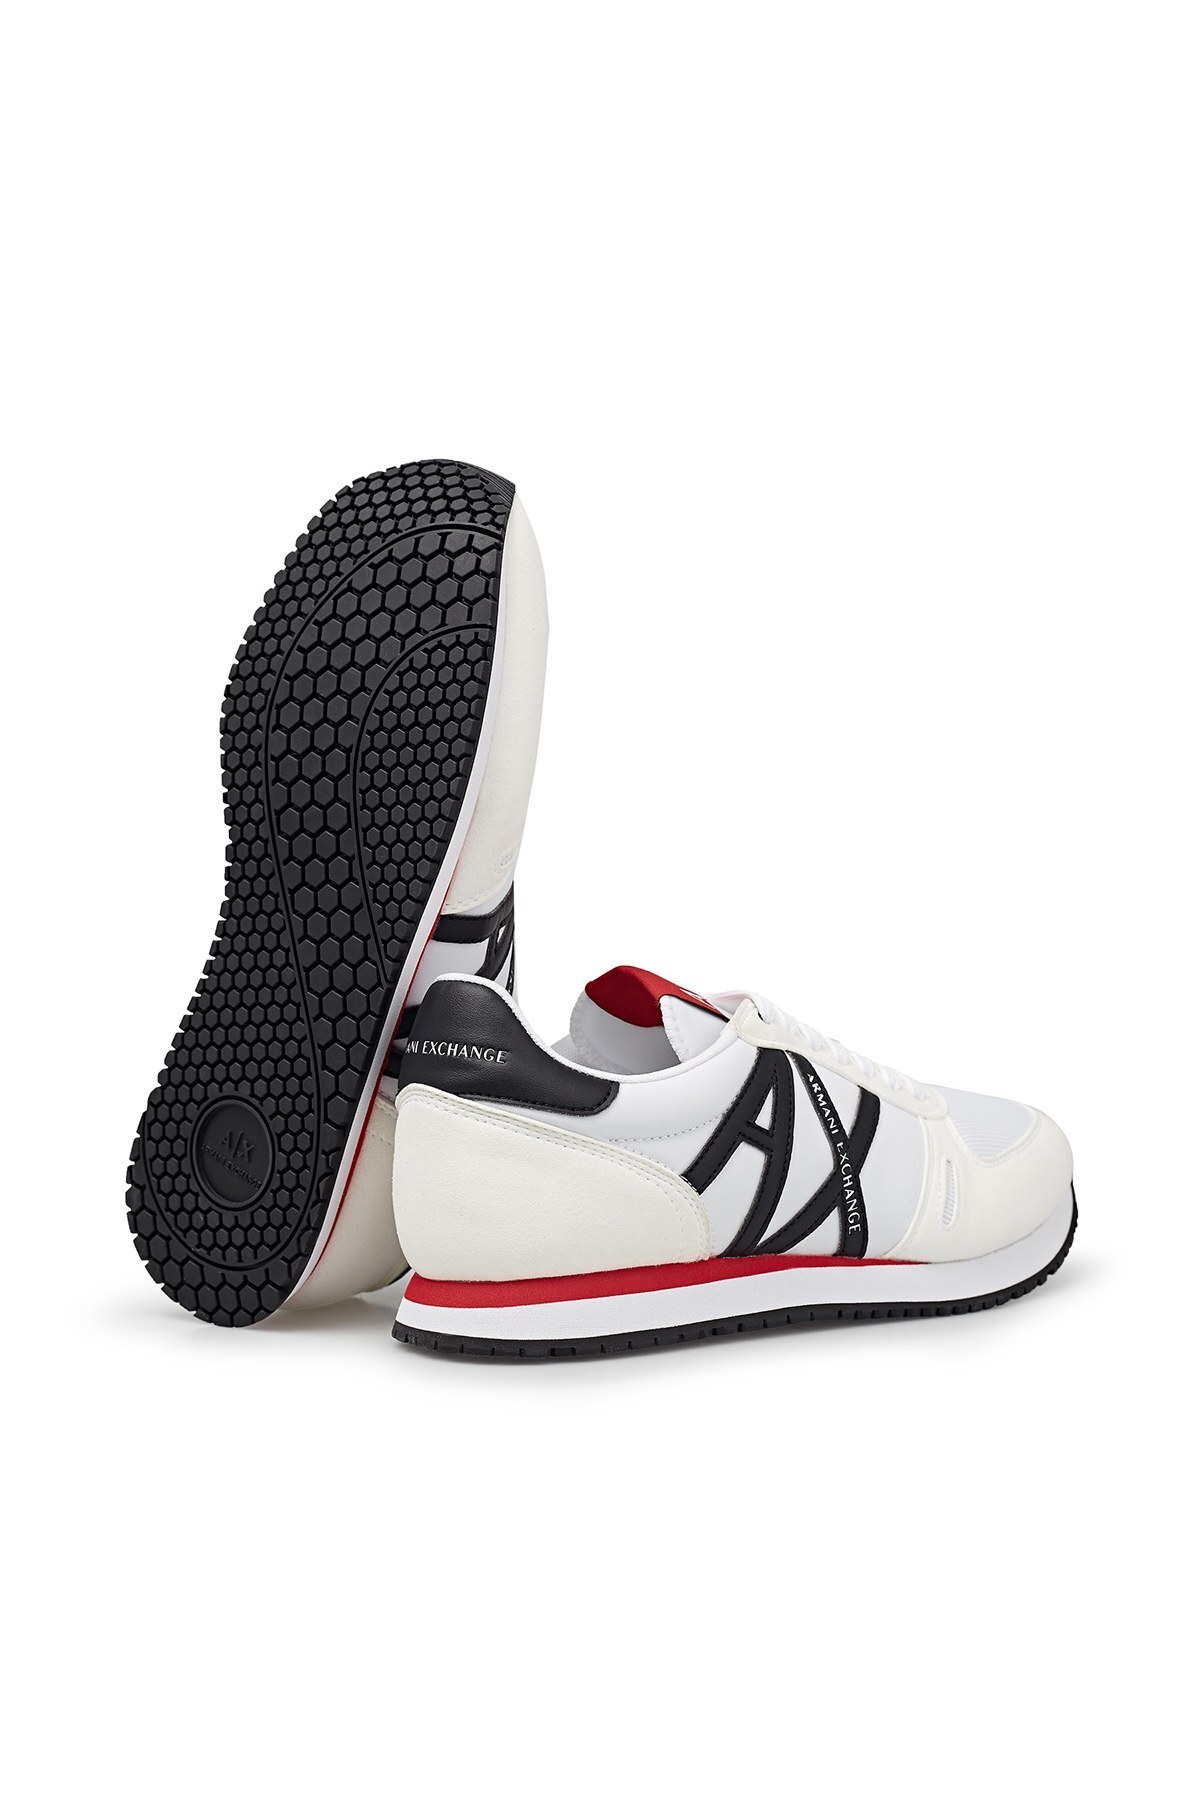 Armani Exchange Günlük Spor Erkek Ayakkabı XUX017 XCC68 K488 BEYAZ-SİYAH